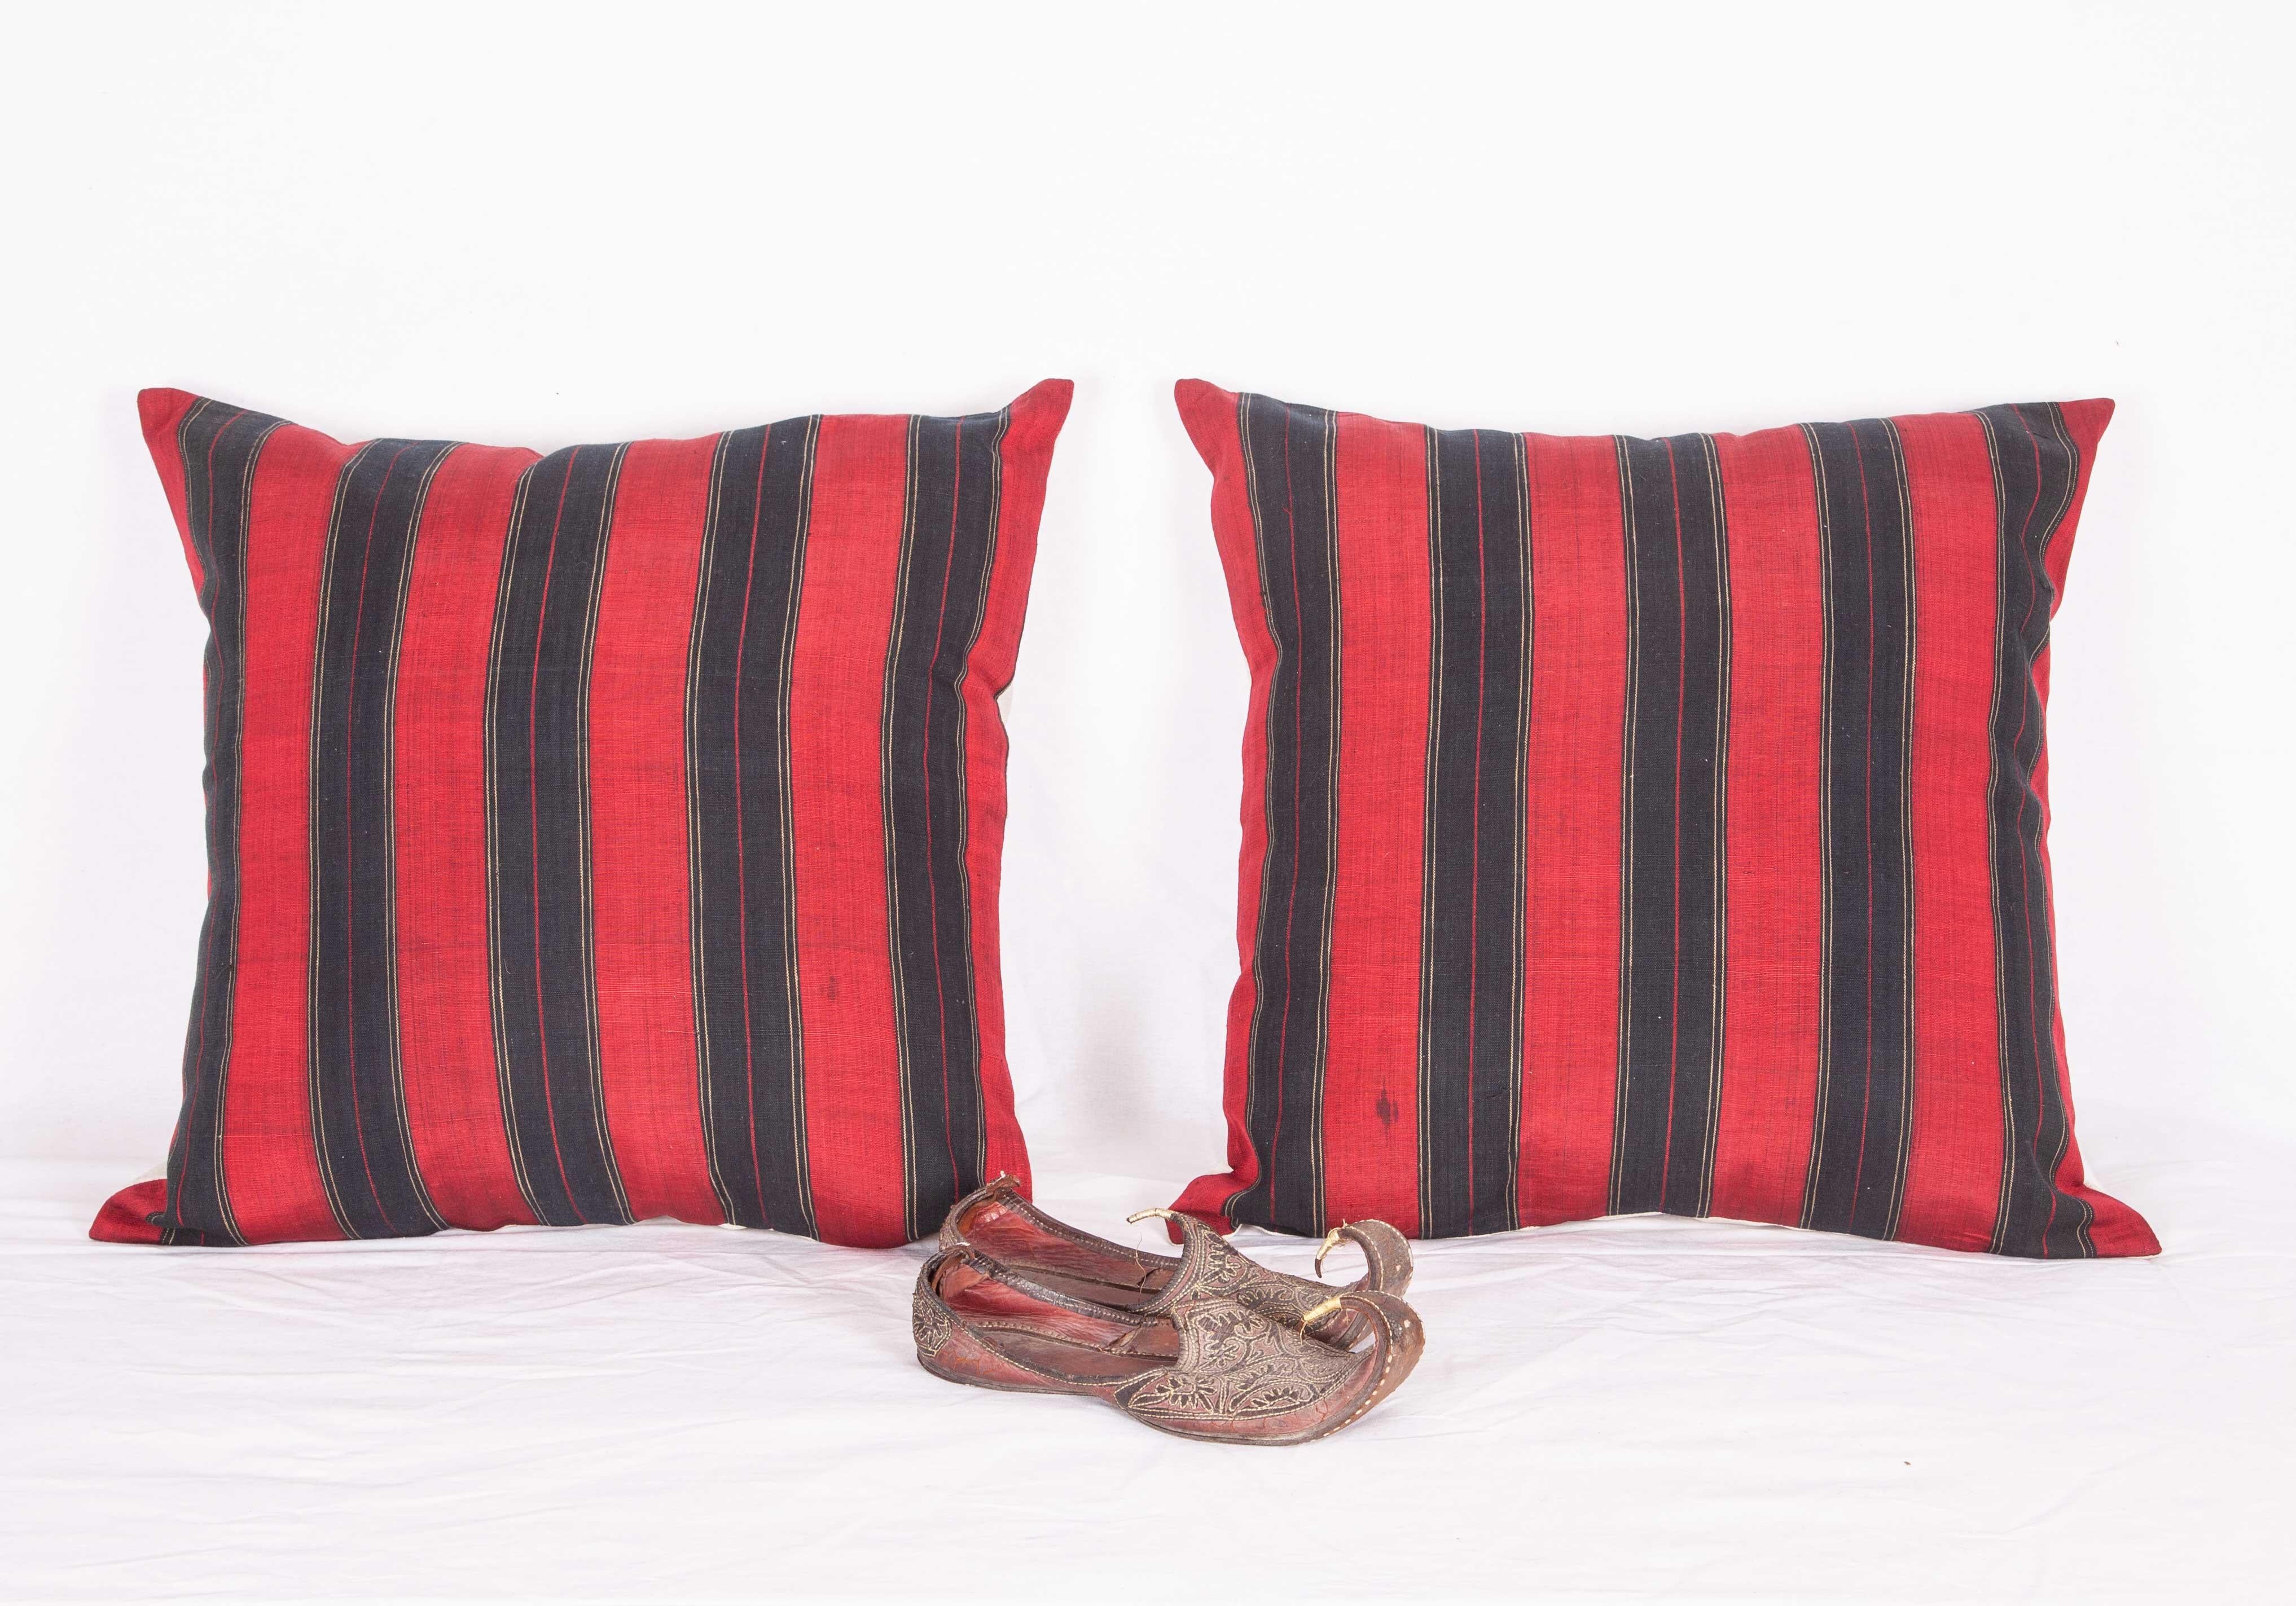 Die Kissenbezüge wurden aus einem afghanischen Waziri-, Seiden- und Baumwollschal aus dem frühen 20. Jahrhundert gefertigt. Die roten Teile sind aus Seide. Sie werden nicht mit Einlagen geliefert, sondern mit Beuteln, die auf die Größe zugeschnitten